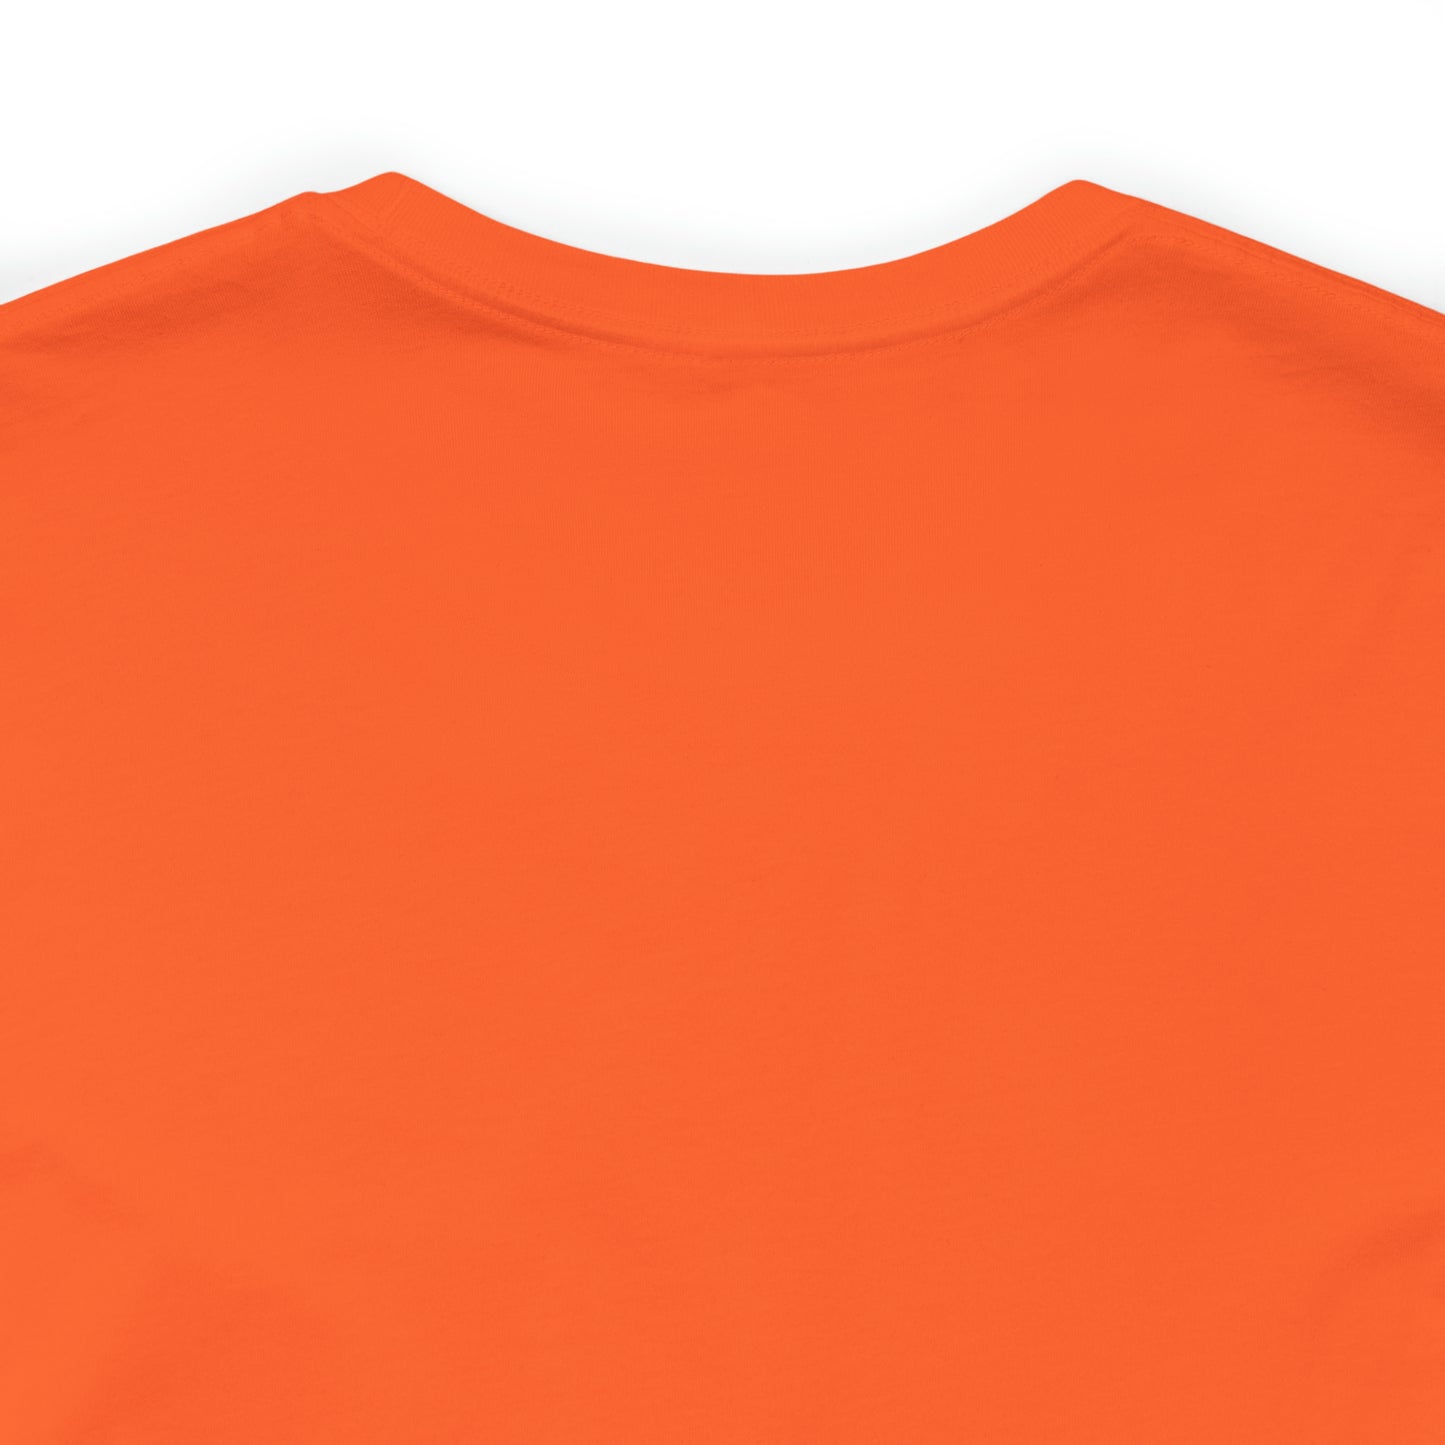 Dog Halloween Shirt, Fall T-shirts for Women, Ghost Halloween tshirt, Pumpkin T Shirt, Ghost Dog TShirt, T528